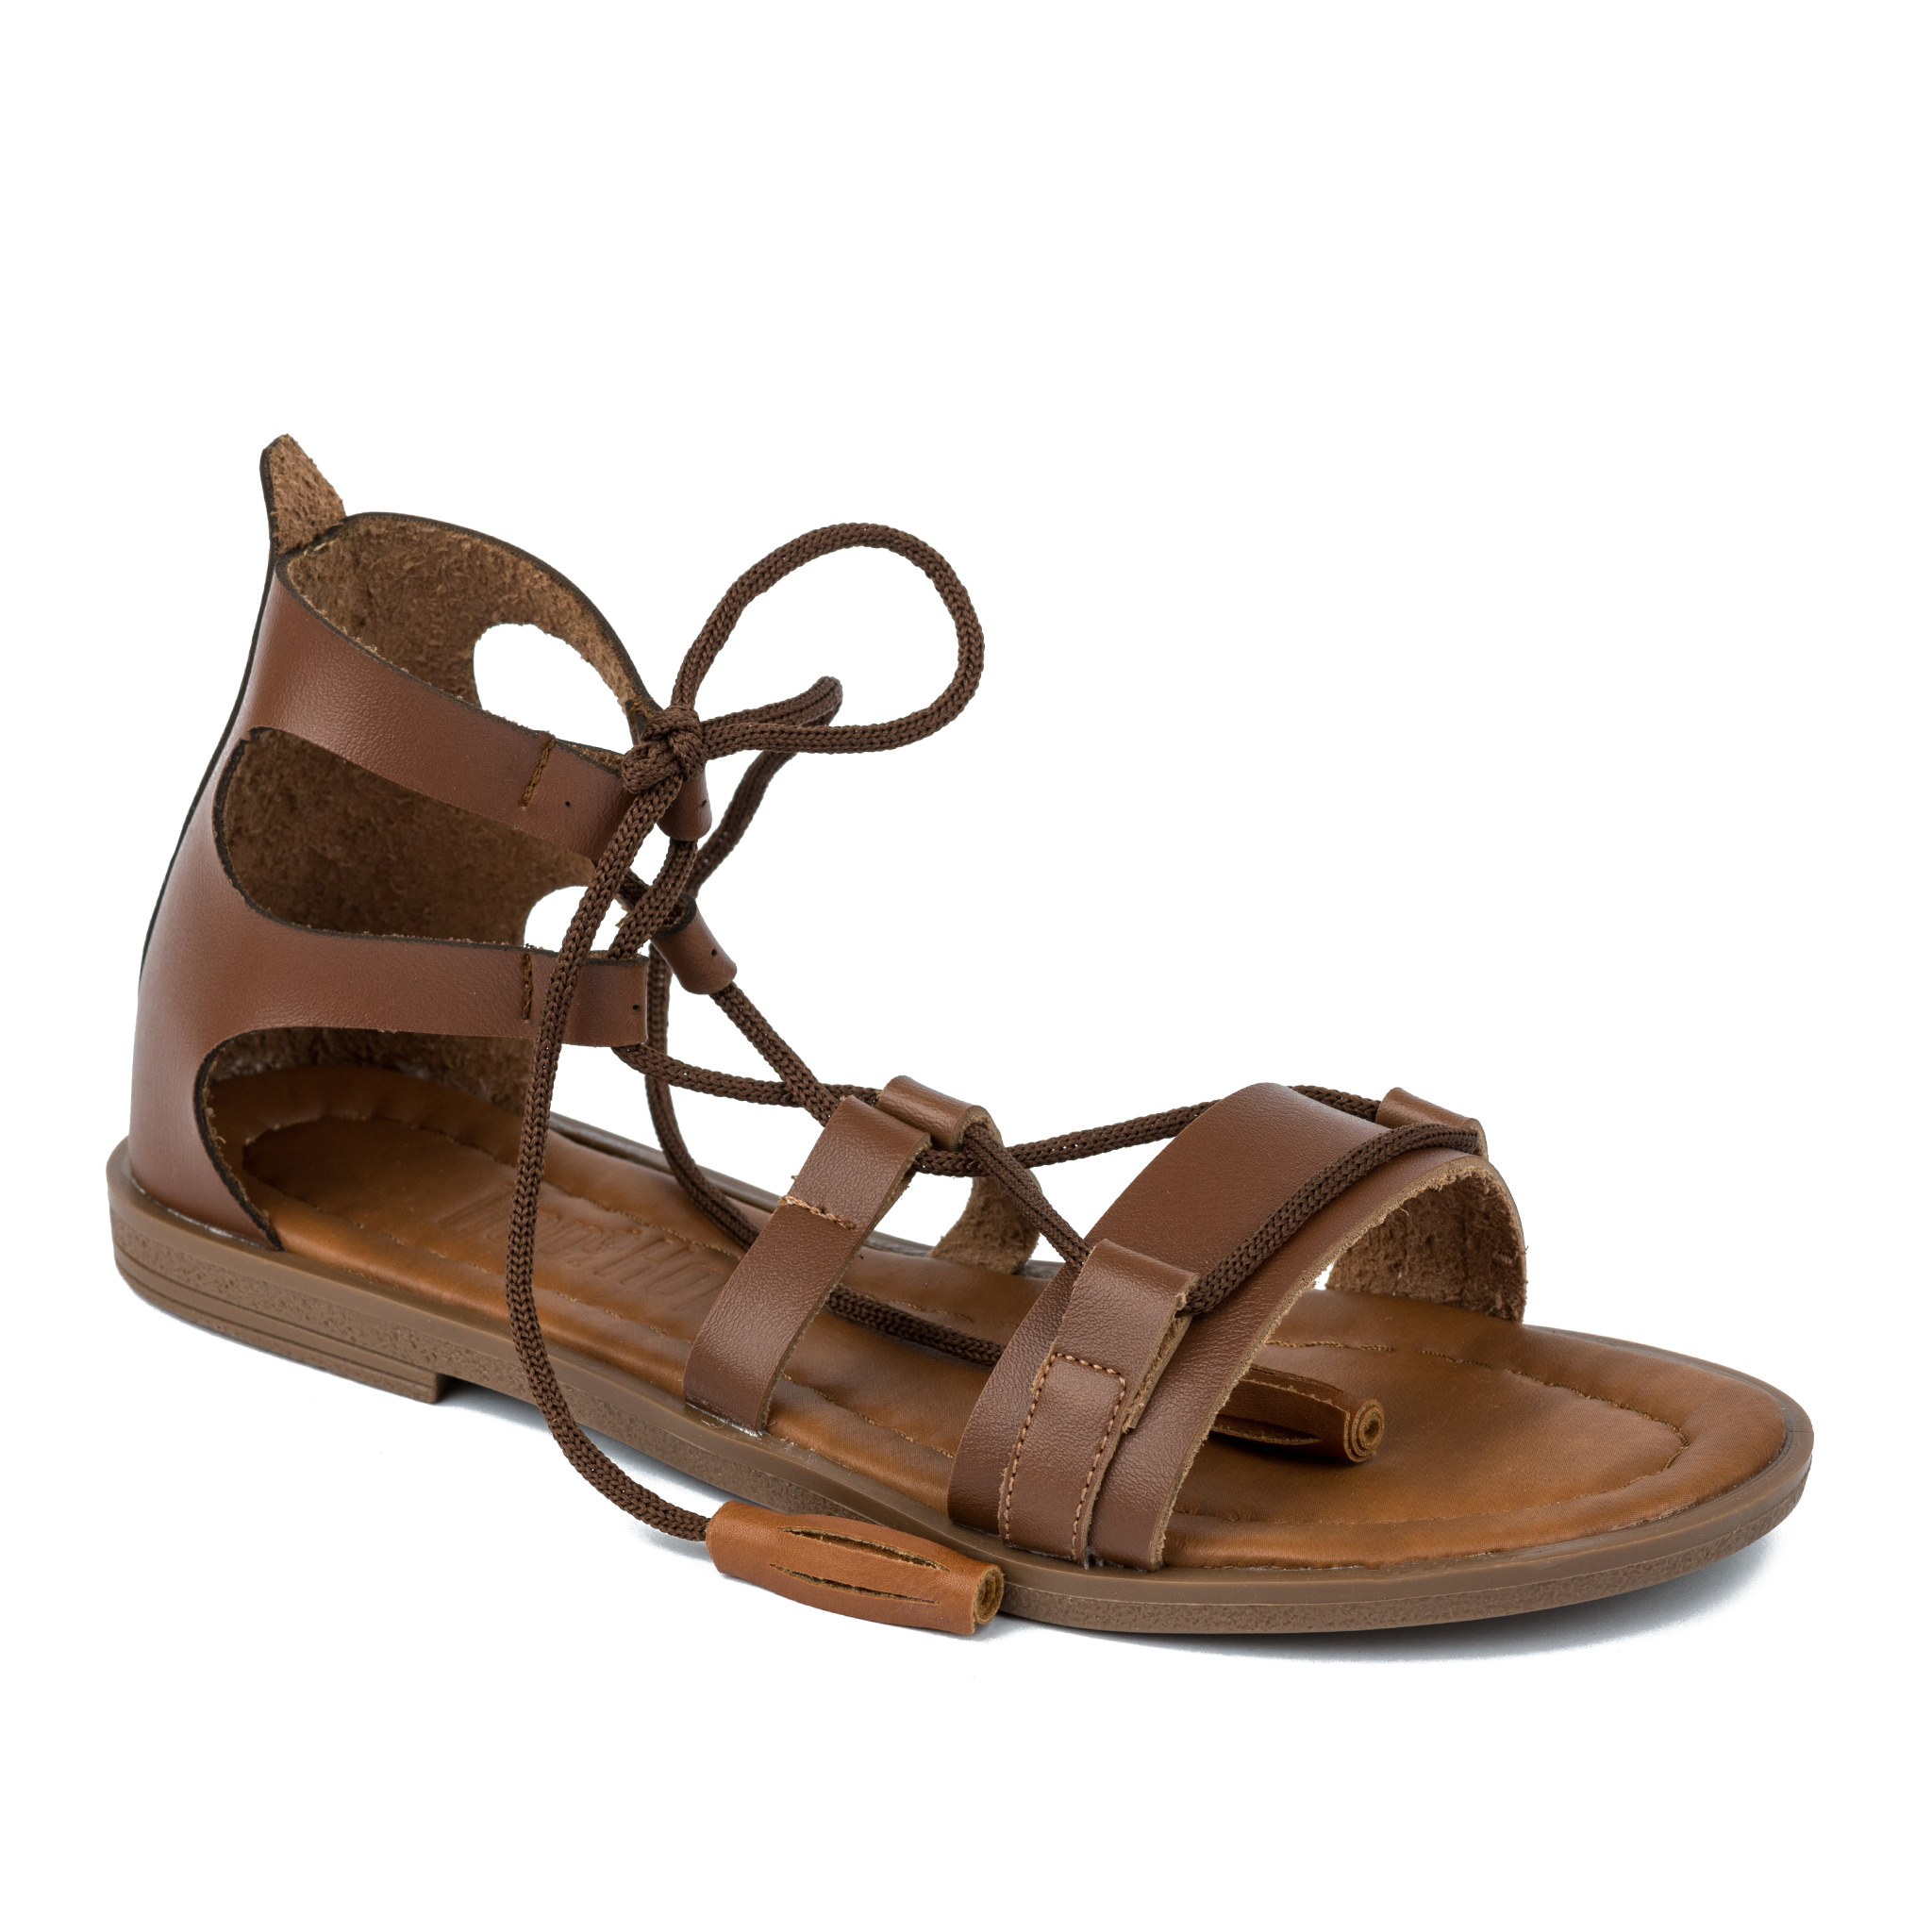 Women sandals A261 - CAMEL